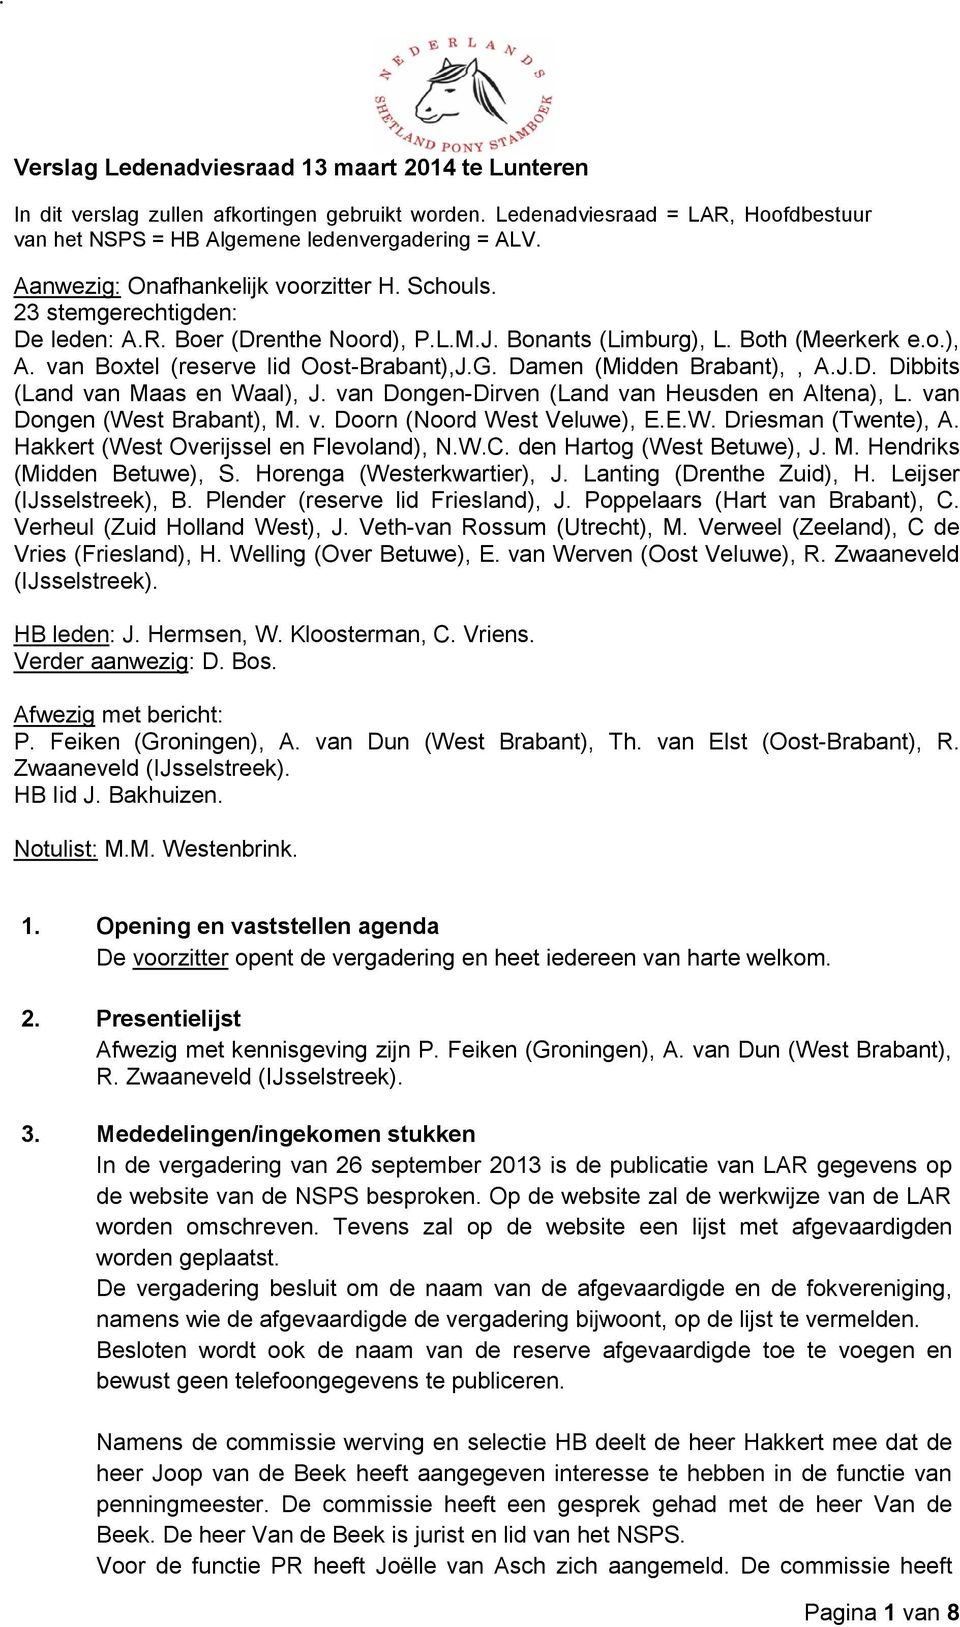 van Boxtel (reserve lid Oost-Brabant),J.G. Damen (Midden Brabant),, A.J.D. Dibbits (Land van Maas en Waal), J. van Dongen-Dirven (Land van Heusden en Altena), L. van Dongen (West Brabant), M. v. Doorn (Noord West Veluwe), E.